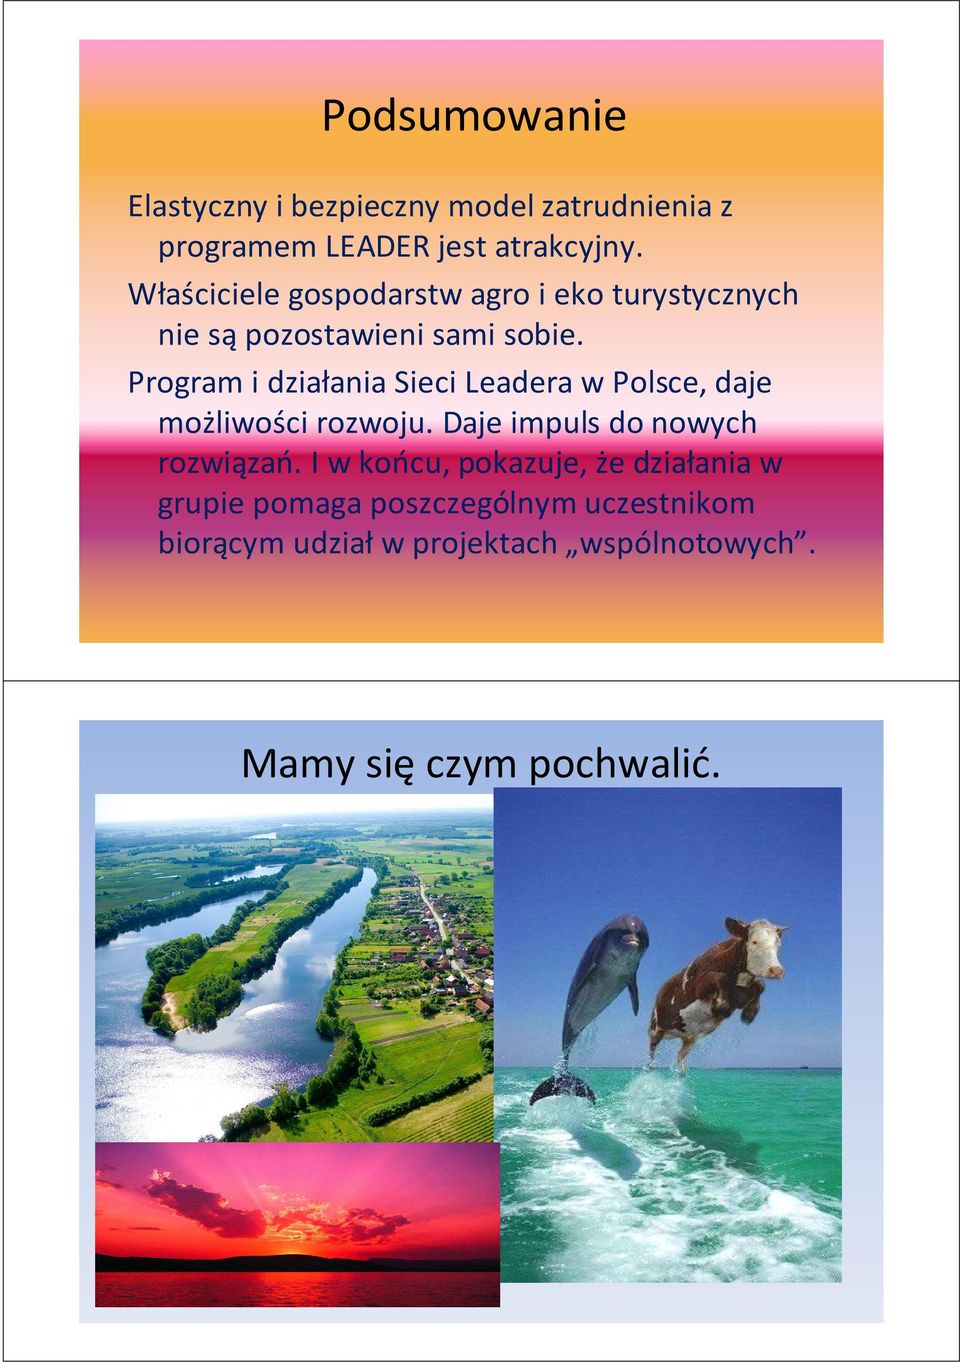 Program i działania Sieci Leadera w Polsce, daje możliwości rozwoju. Daje impuls do nowych rozwiązań.